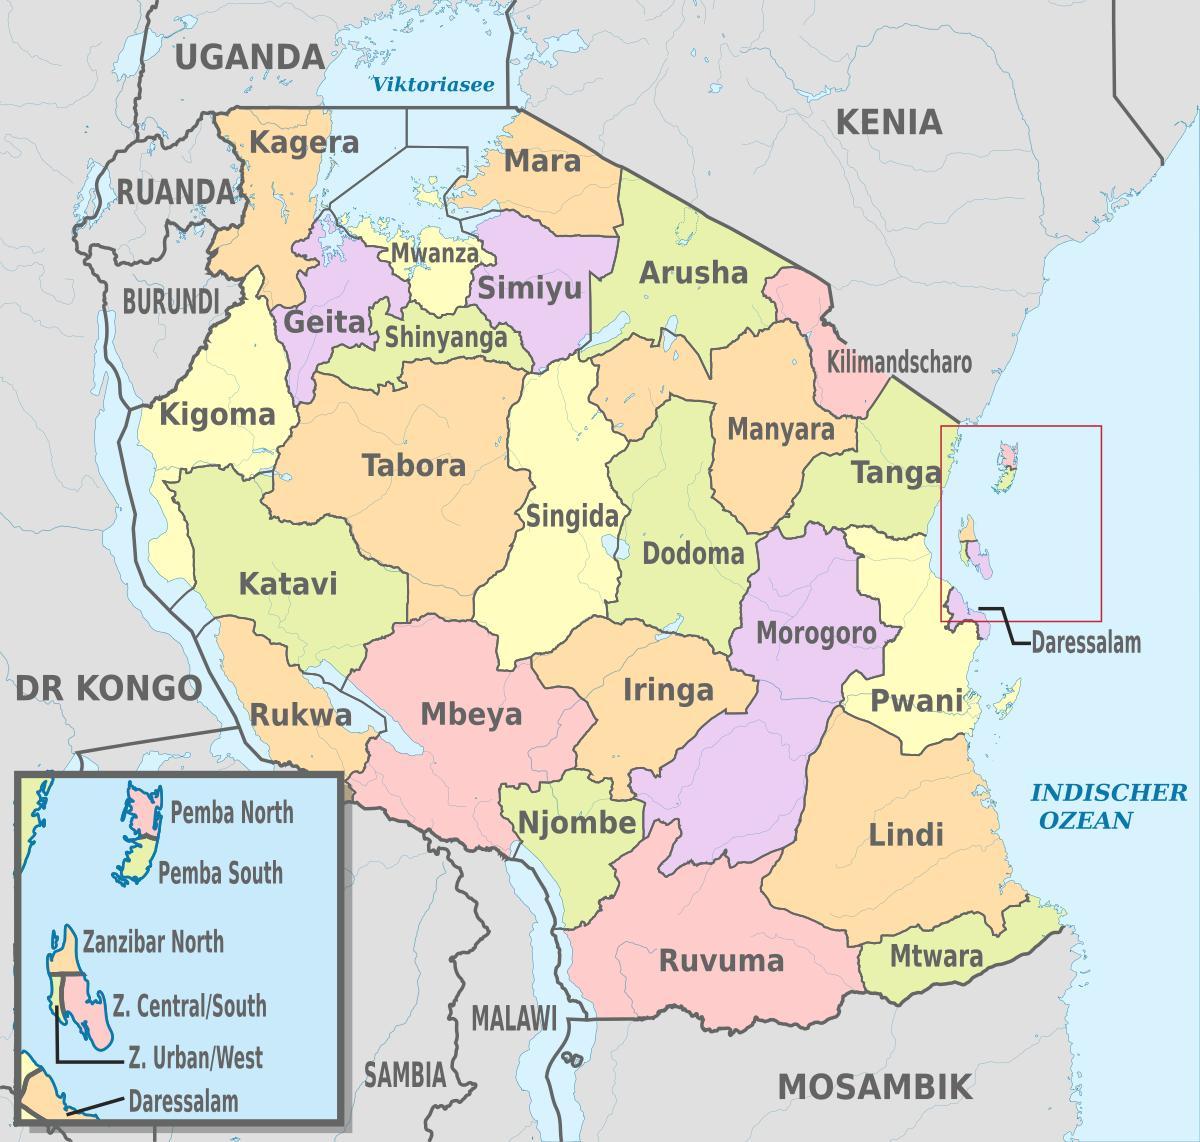 mapa da tanzânia mostrando regiões e distritos